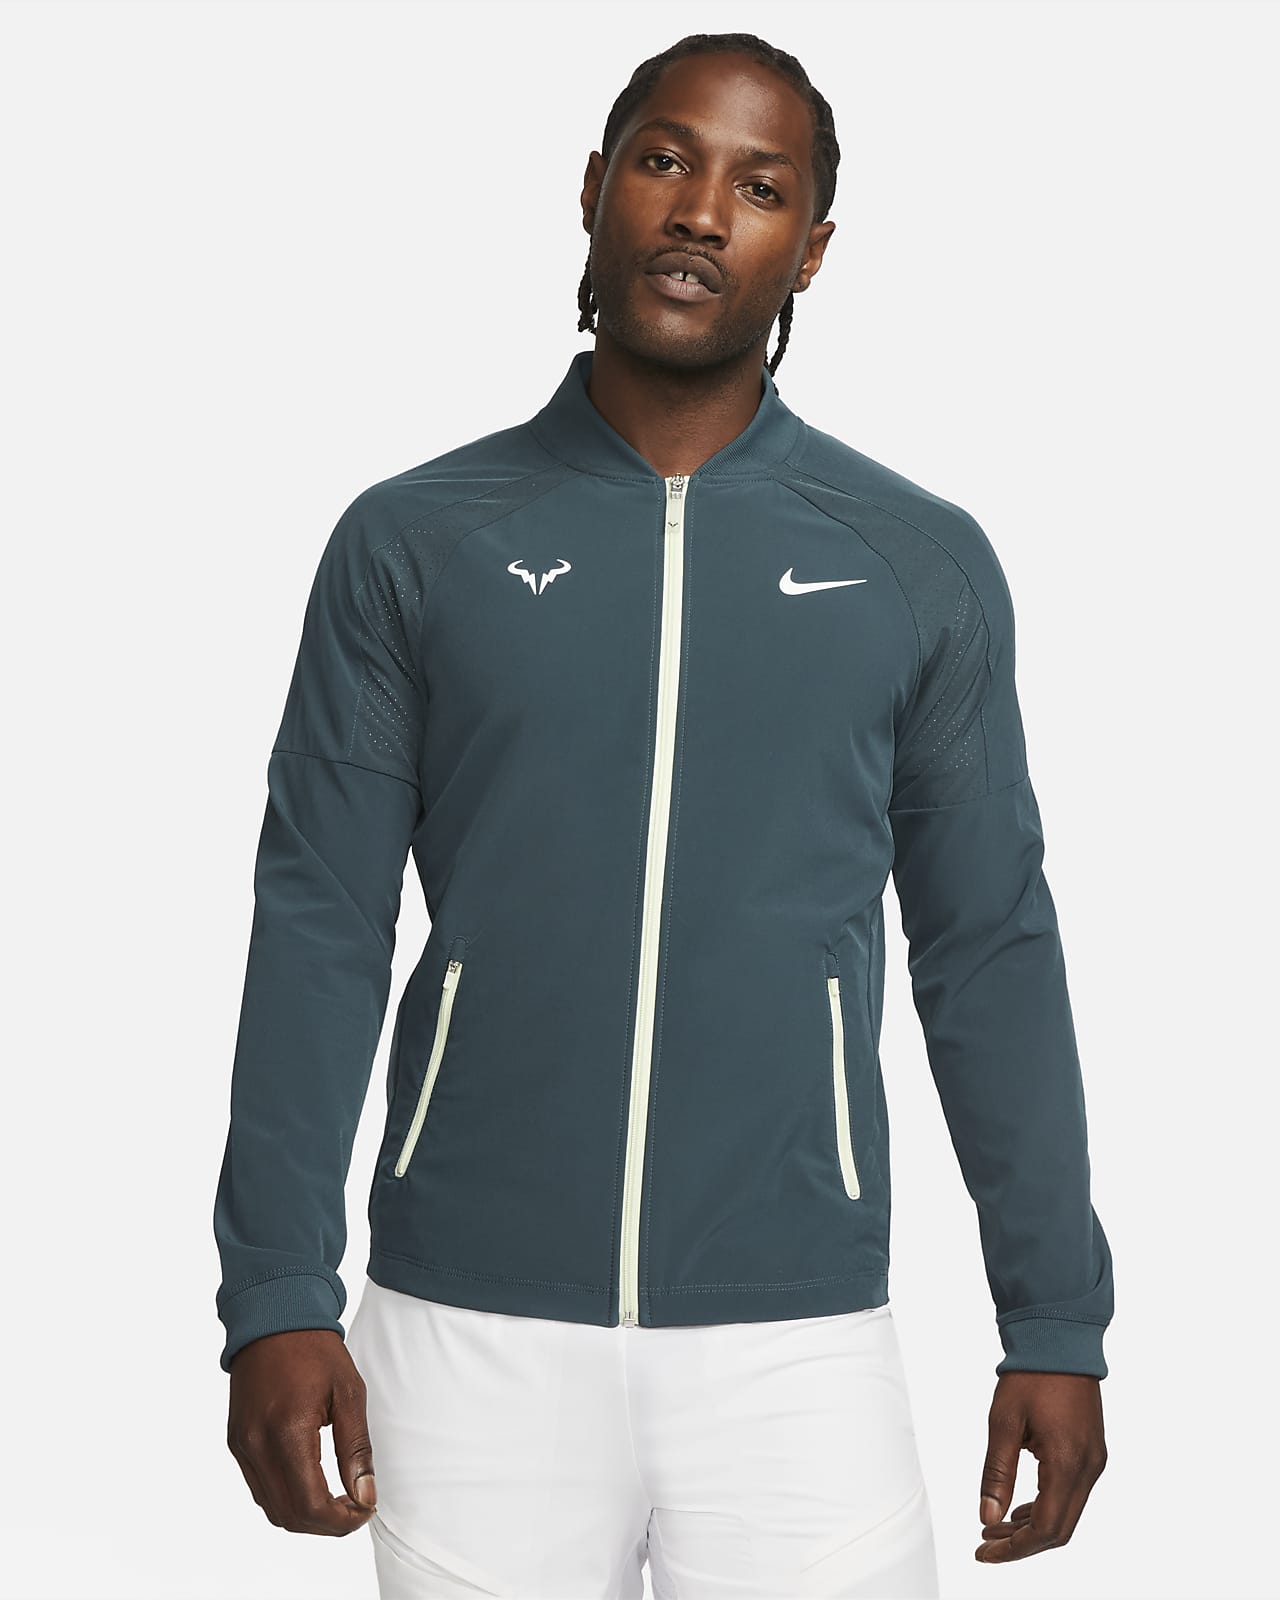 Suradam fluido Exponer Chamarra de tenis para hombre Nike Dri-FIT Rafa. Nike.com